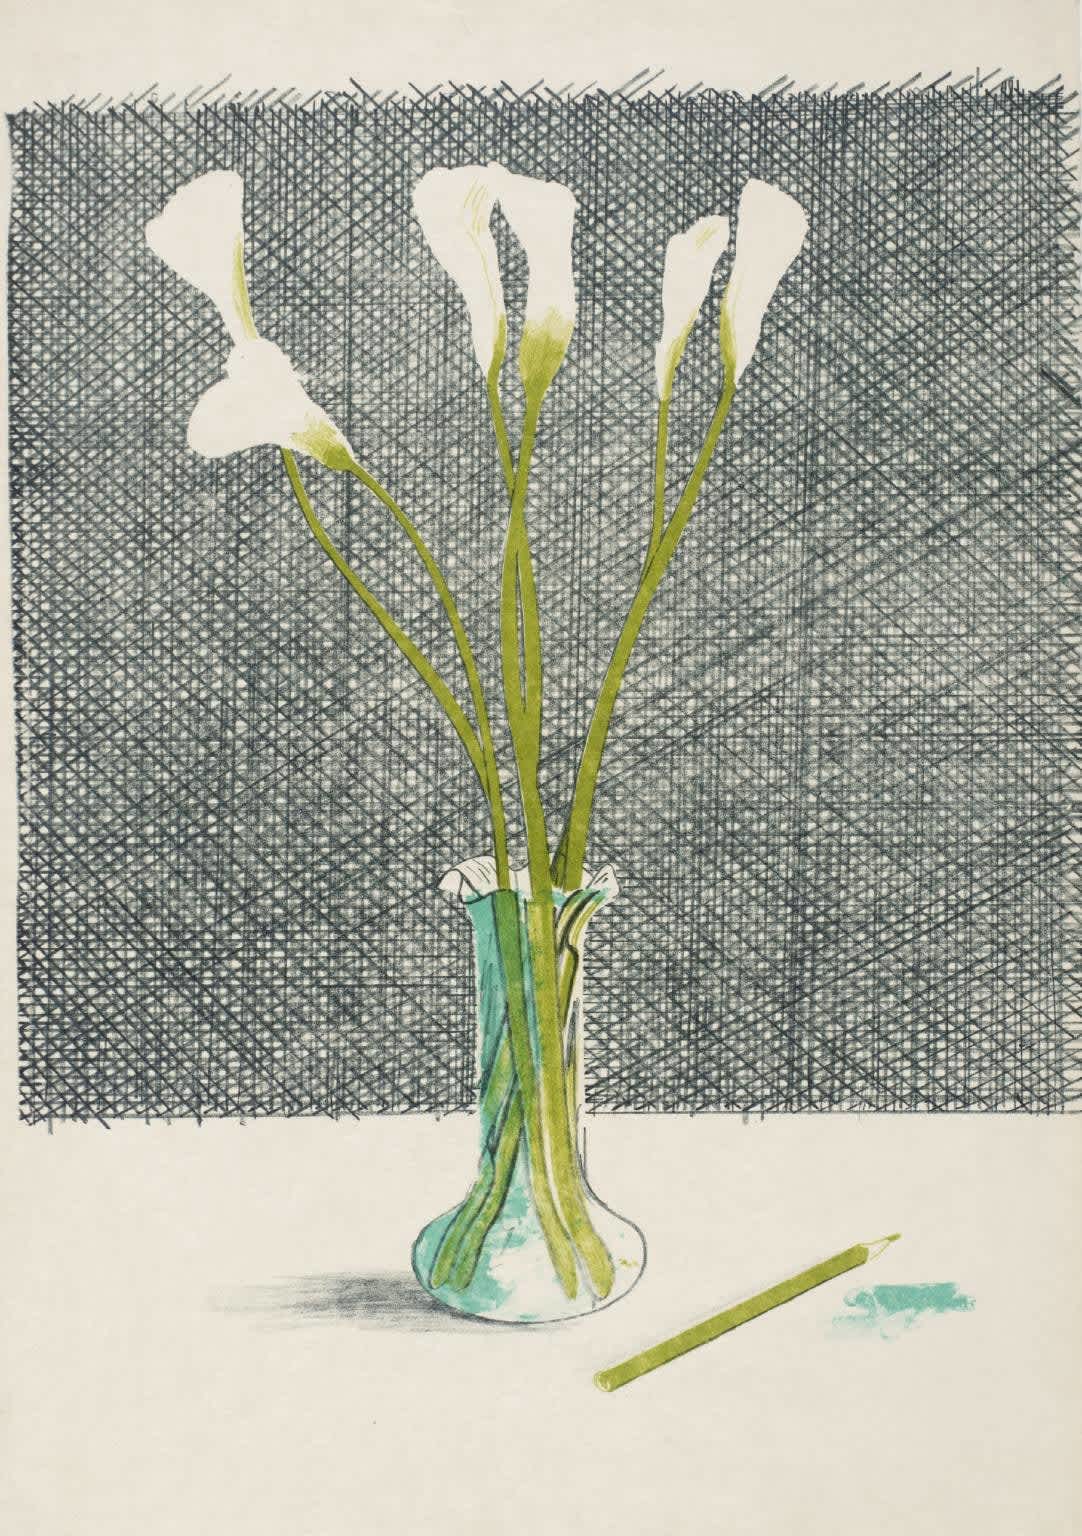 David Hockney, Lillies, from Europäische Graphik No VII, 1971